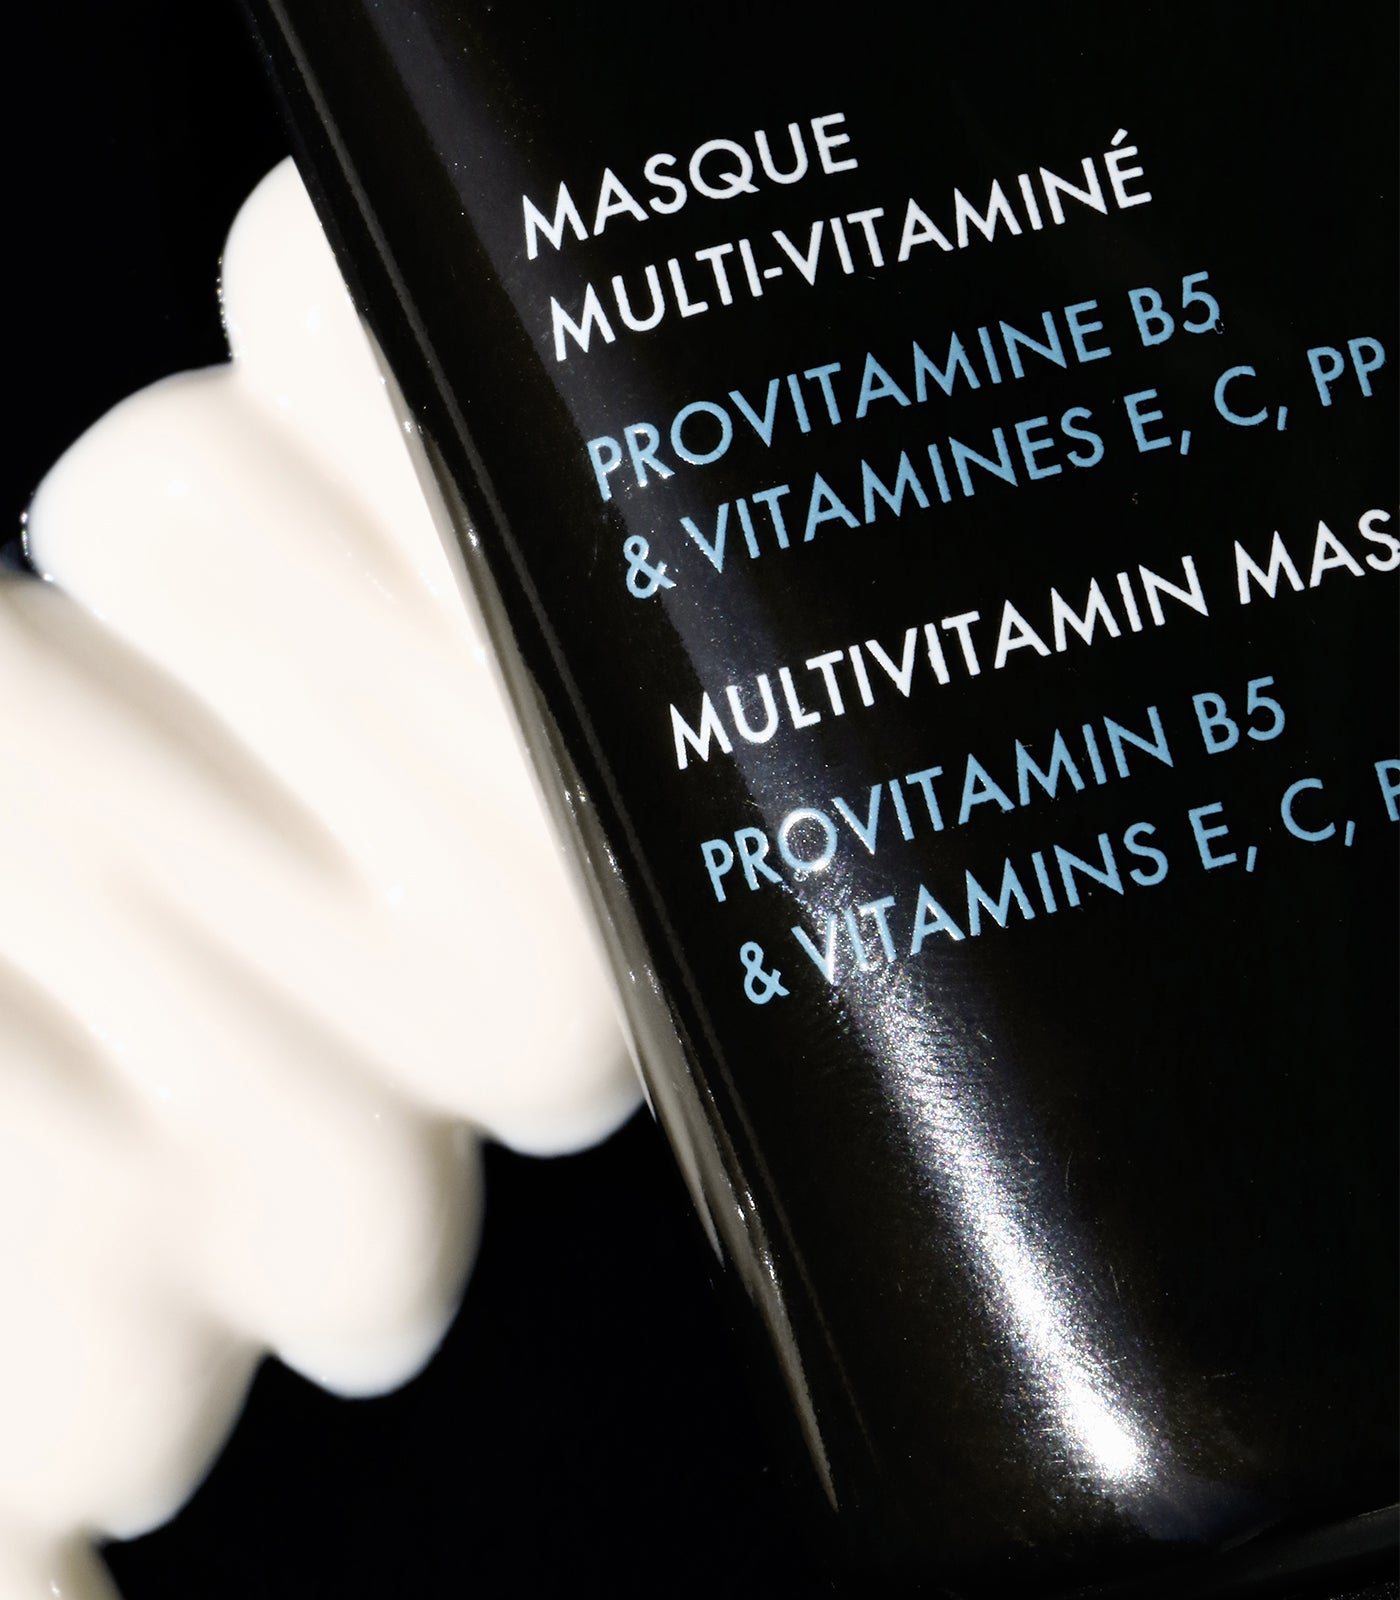 Masque Multi-Vitaminé